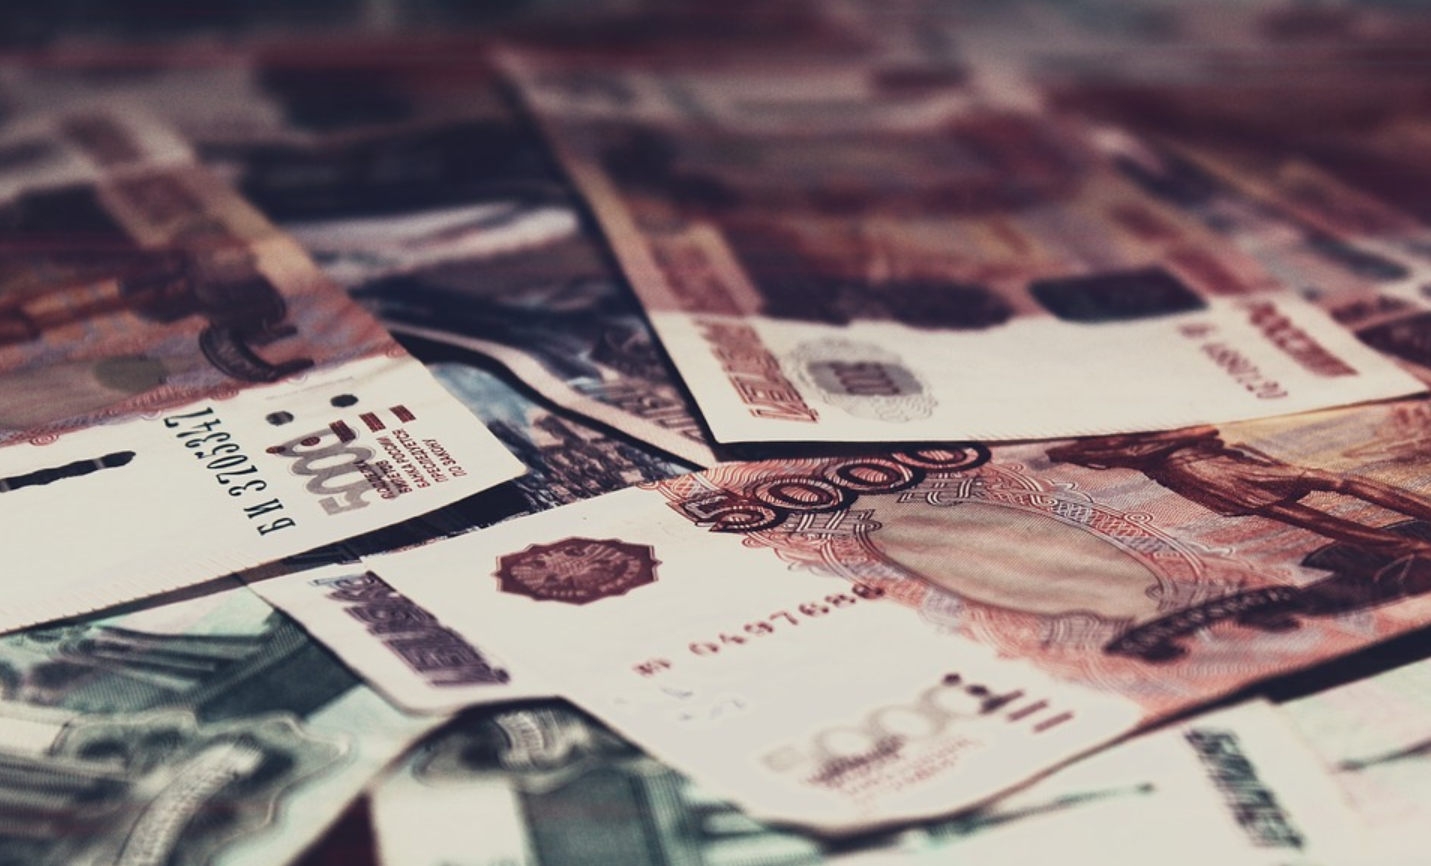 ВТБ нарастил портфель привлеченных средств физлиц до 5 трлн рублей